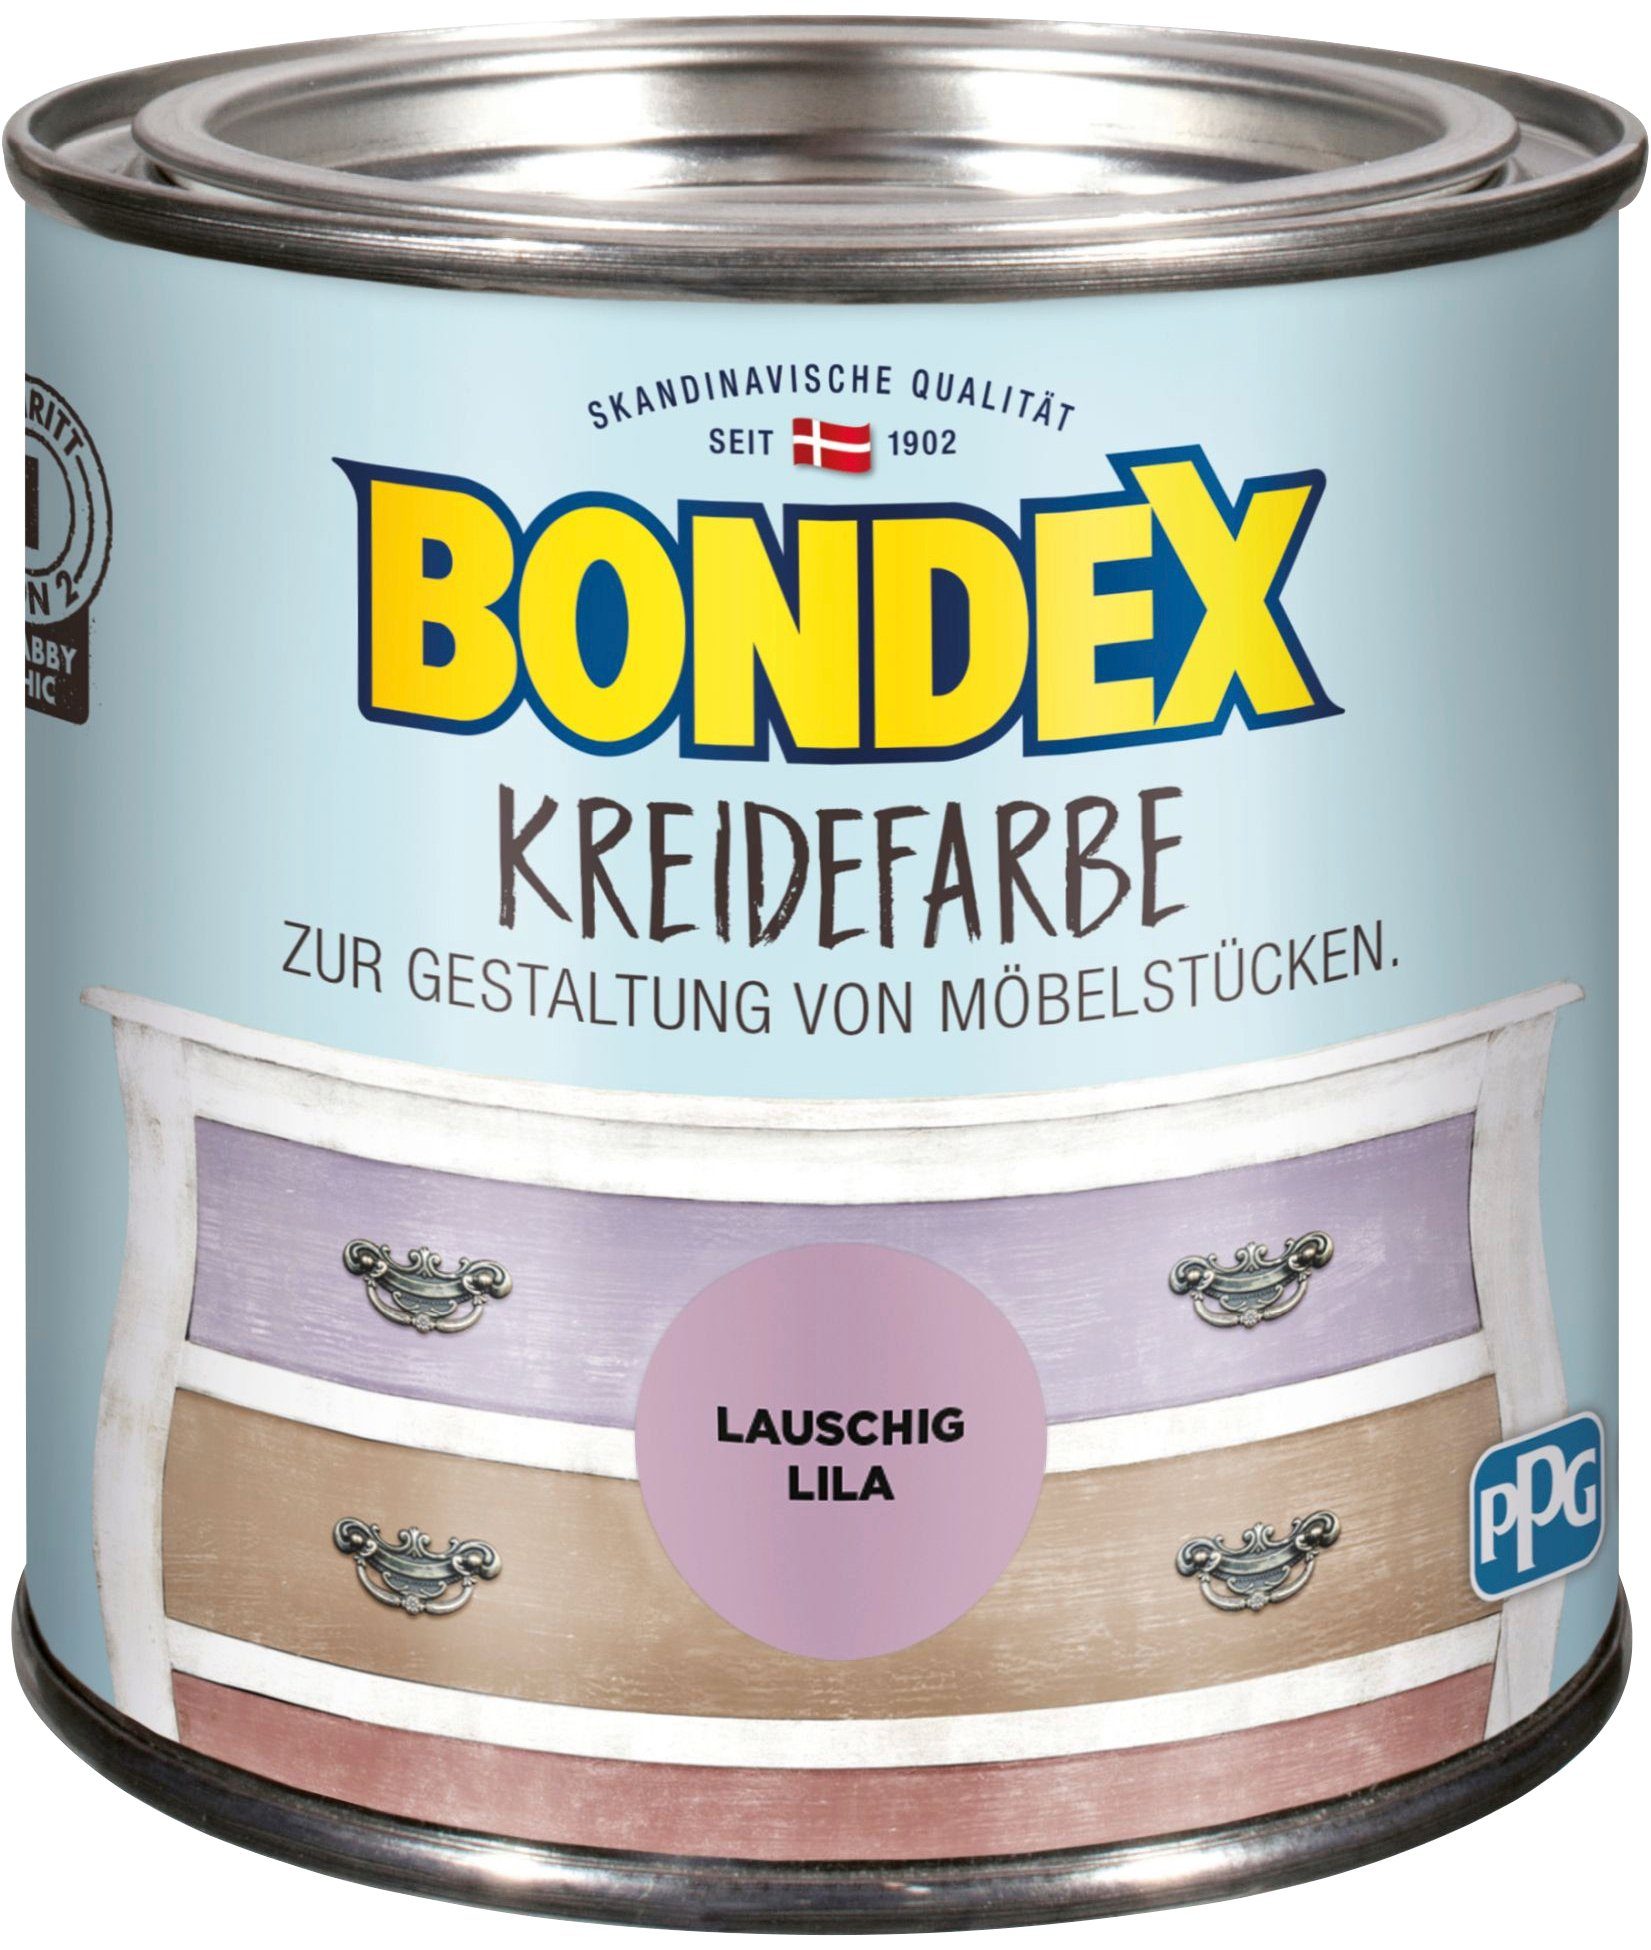 Bondex Kreidefarbe KREIDEFARBE, Gestaltung Lila Möbelstücken, zur von Lauschig 0,5 l